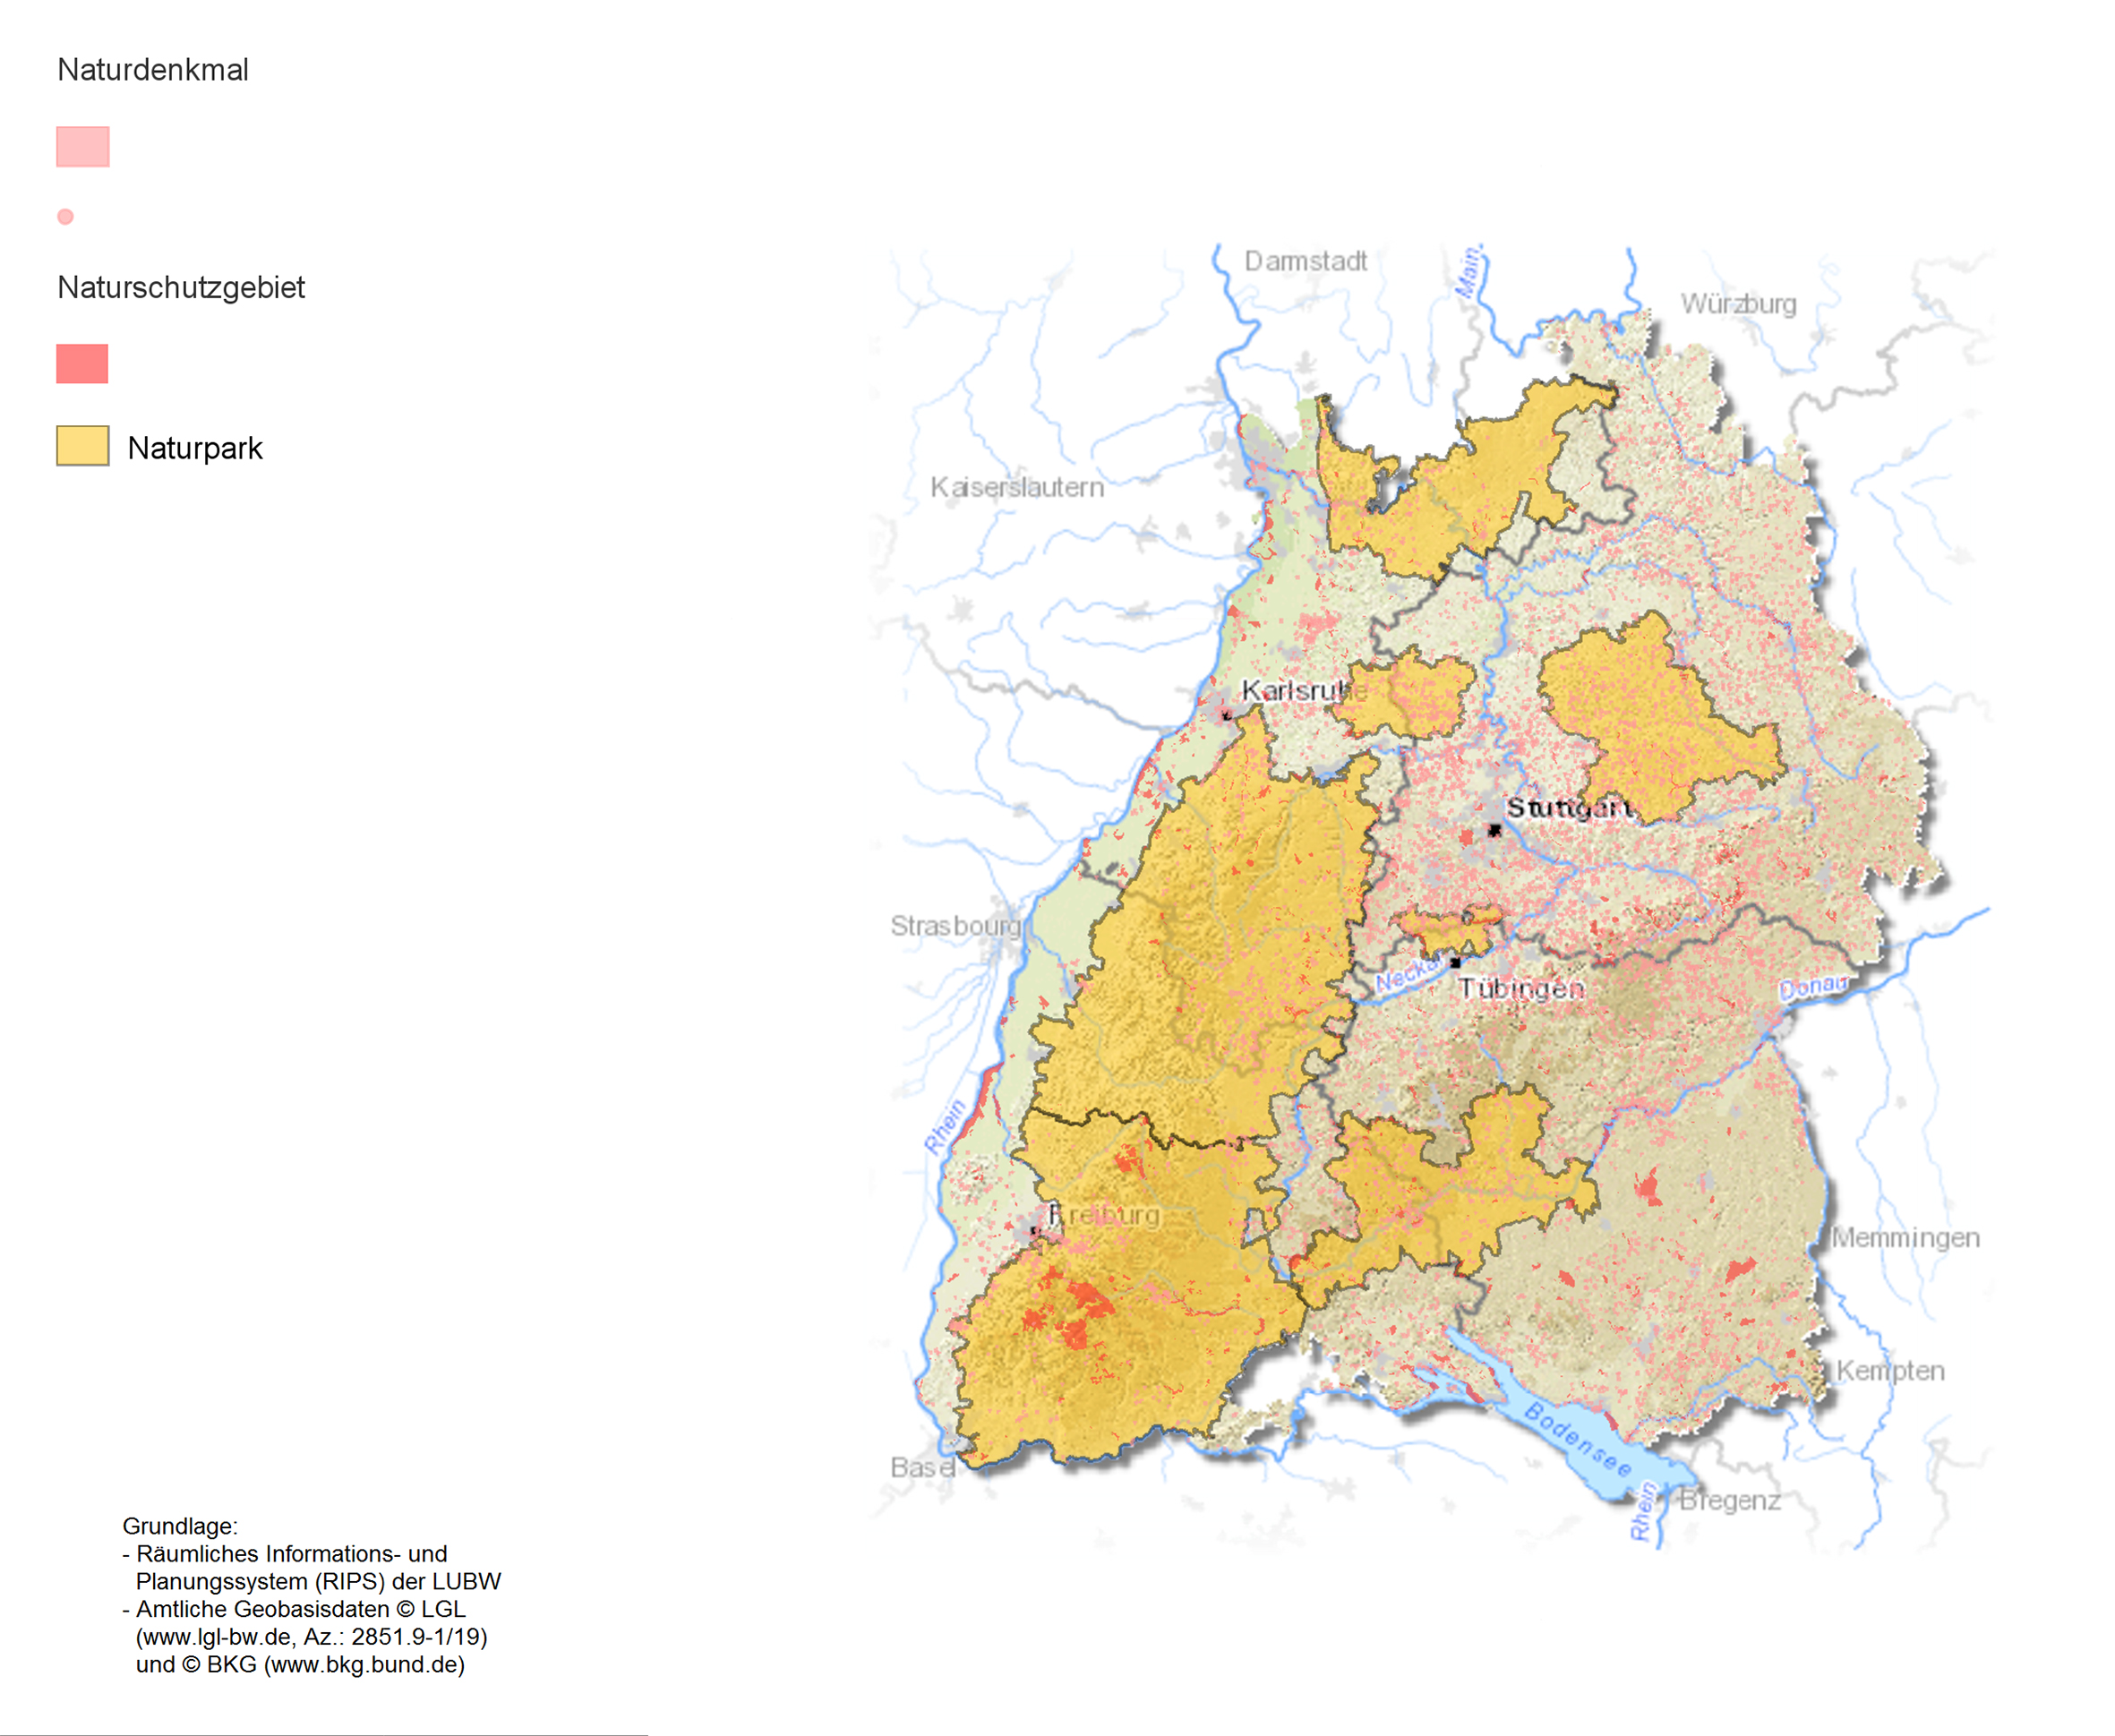 Karte von Baden-Württemberg die Naturdenkmäler, -parks und -schutzgebiete zeigt